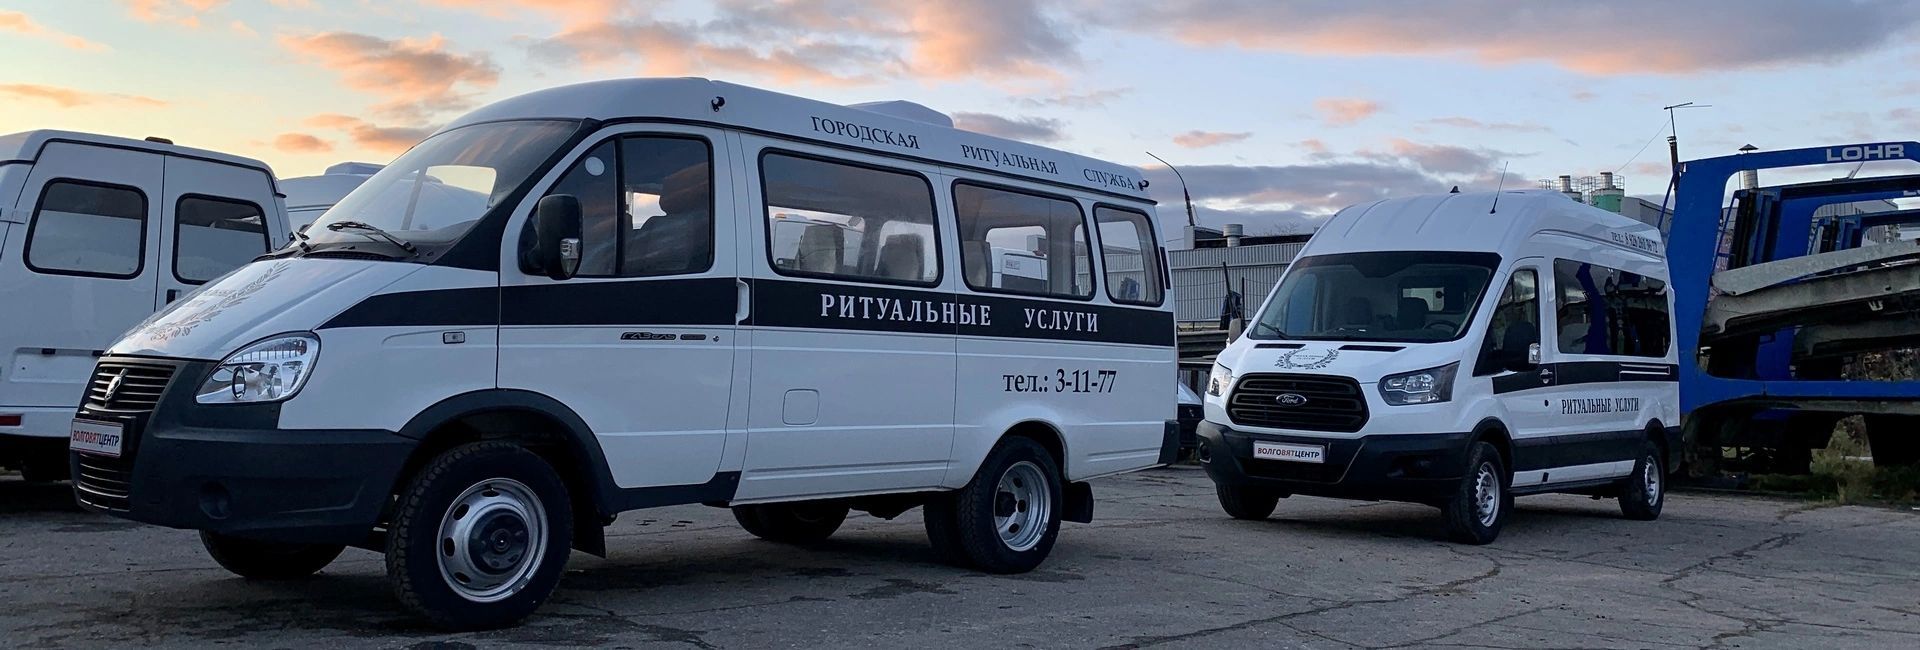 Купить спецавтомобиль для ритуальных услуг катафалк в Нижнем Новгороде || катафалк52